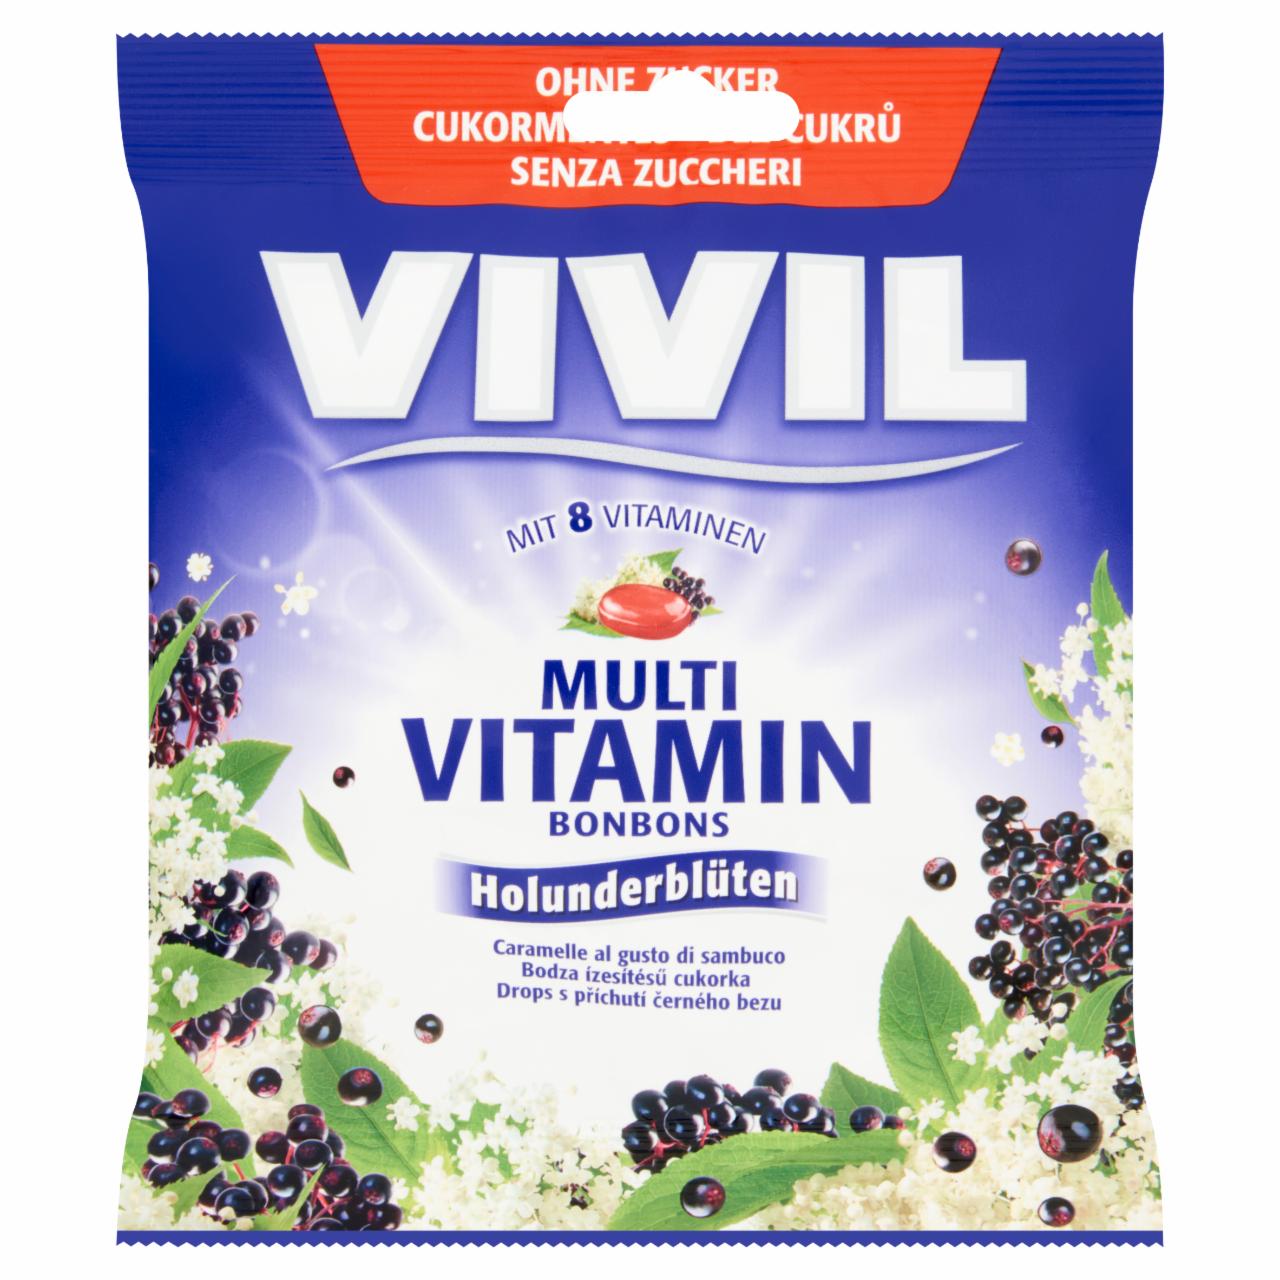 Képek - Vivil Multivitamin cukormentes bodza ízesítésű cukorka 60 g